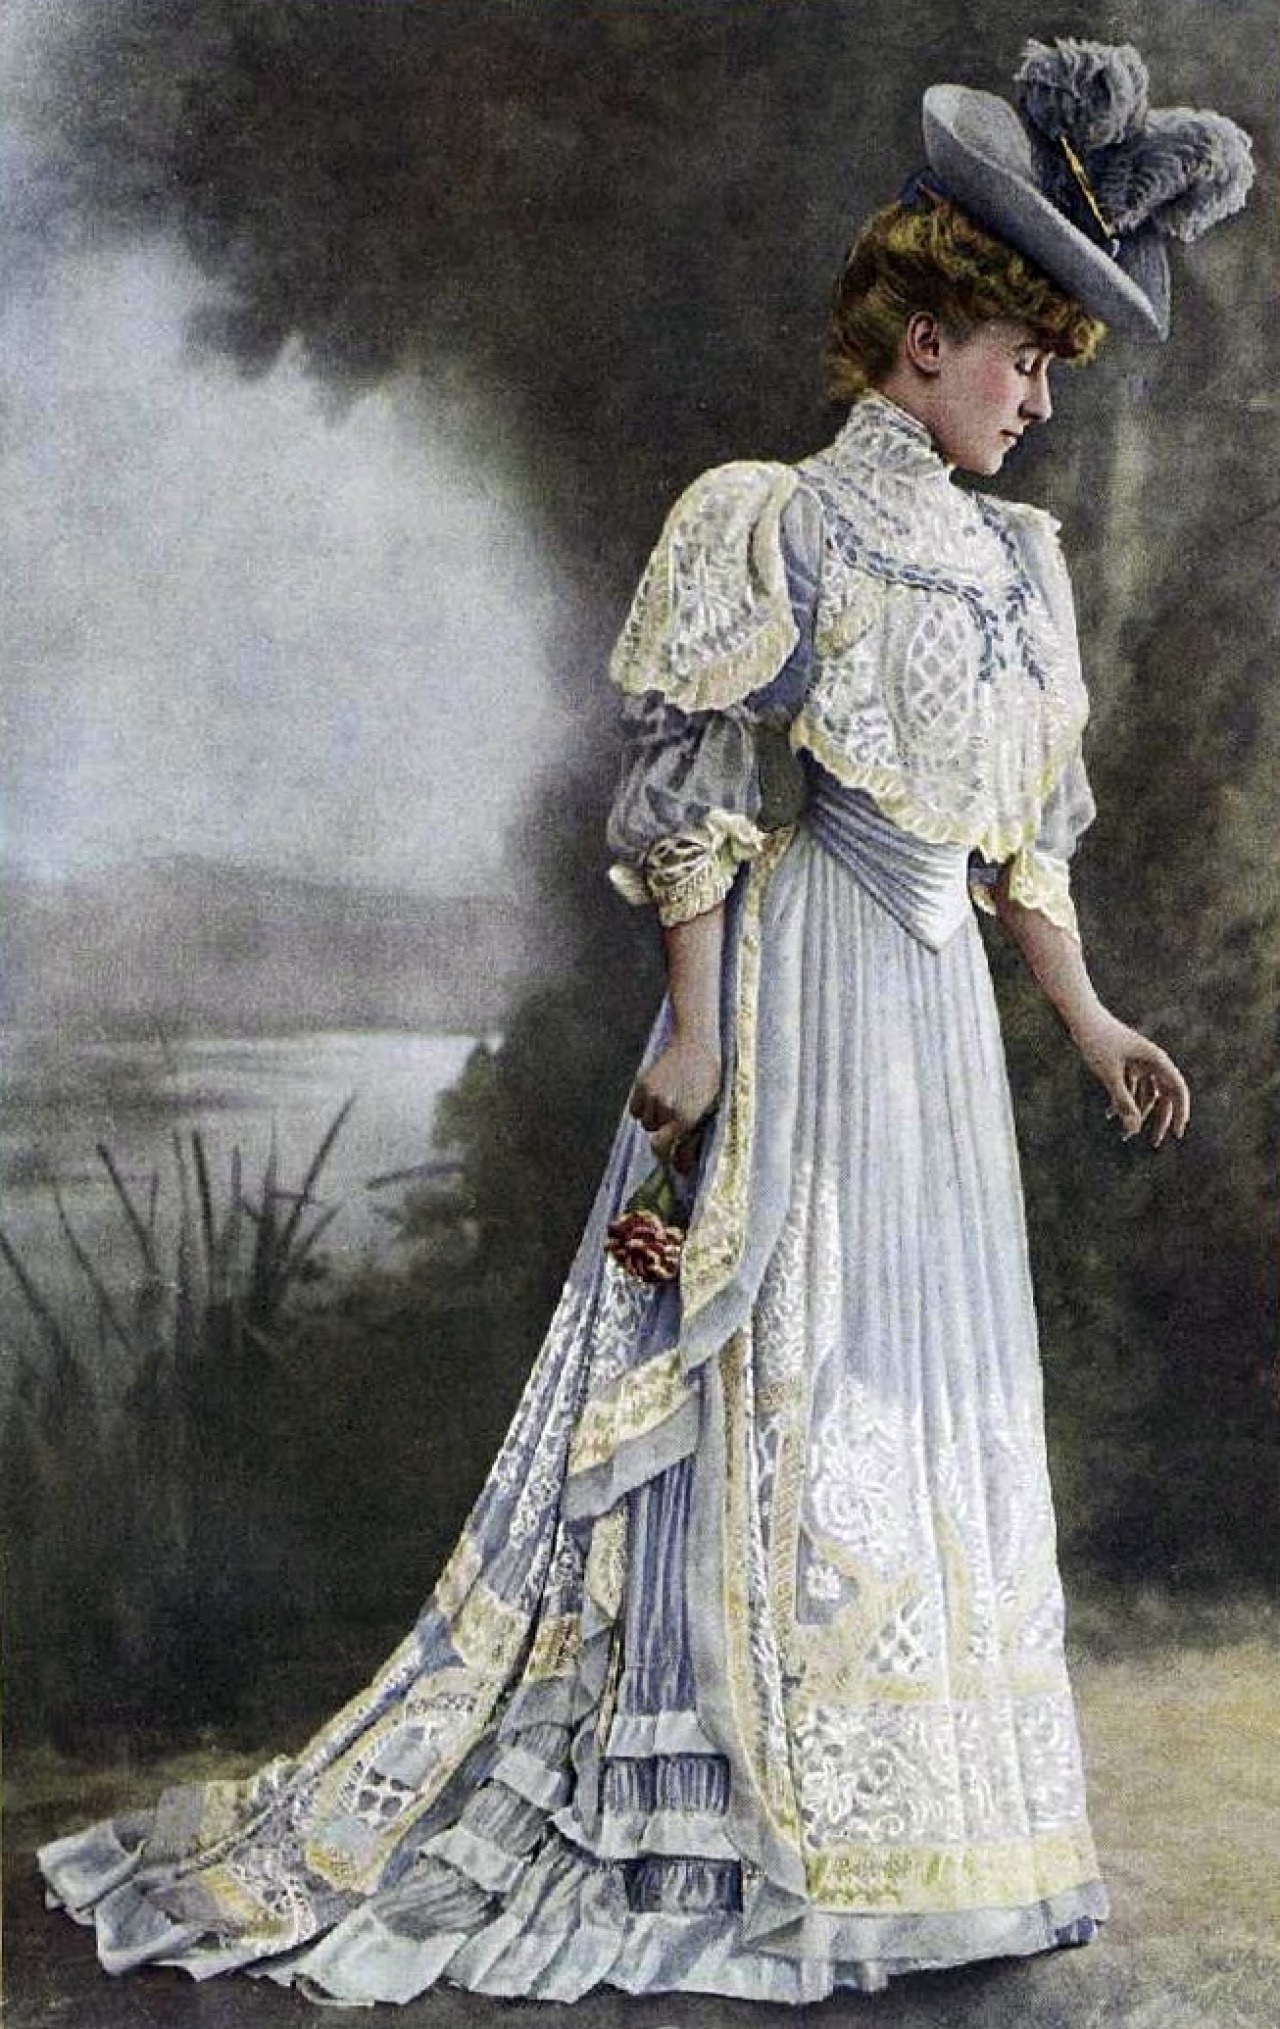 1900s dresses